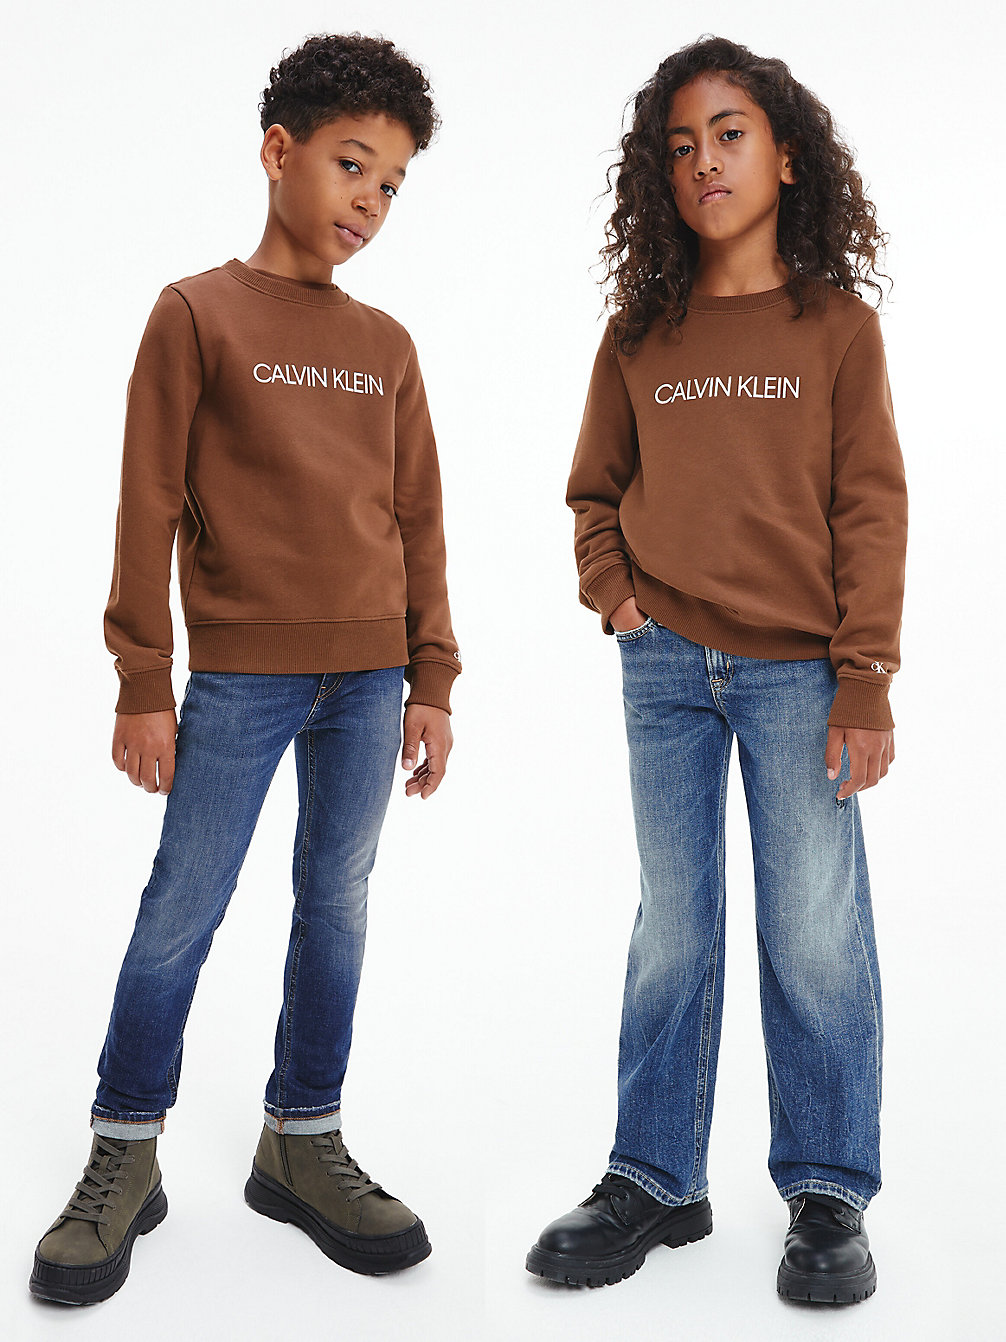 MILK CHOCOLATE Kids Logo Sweatshirt undefined kids unisex Calvin Klein